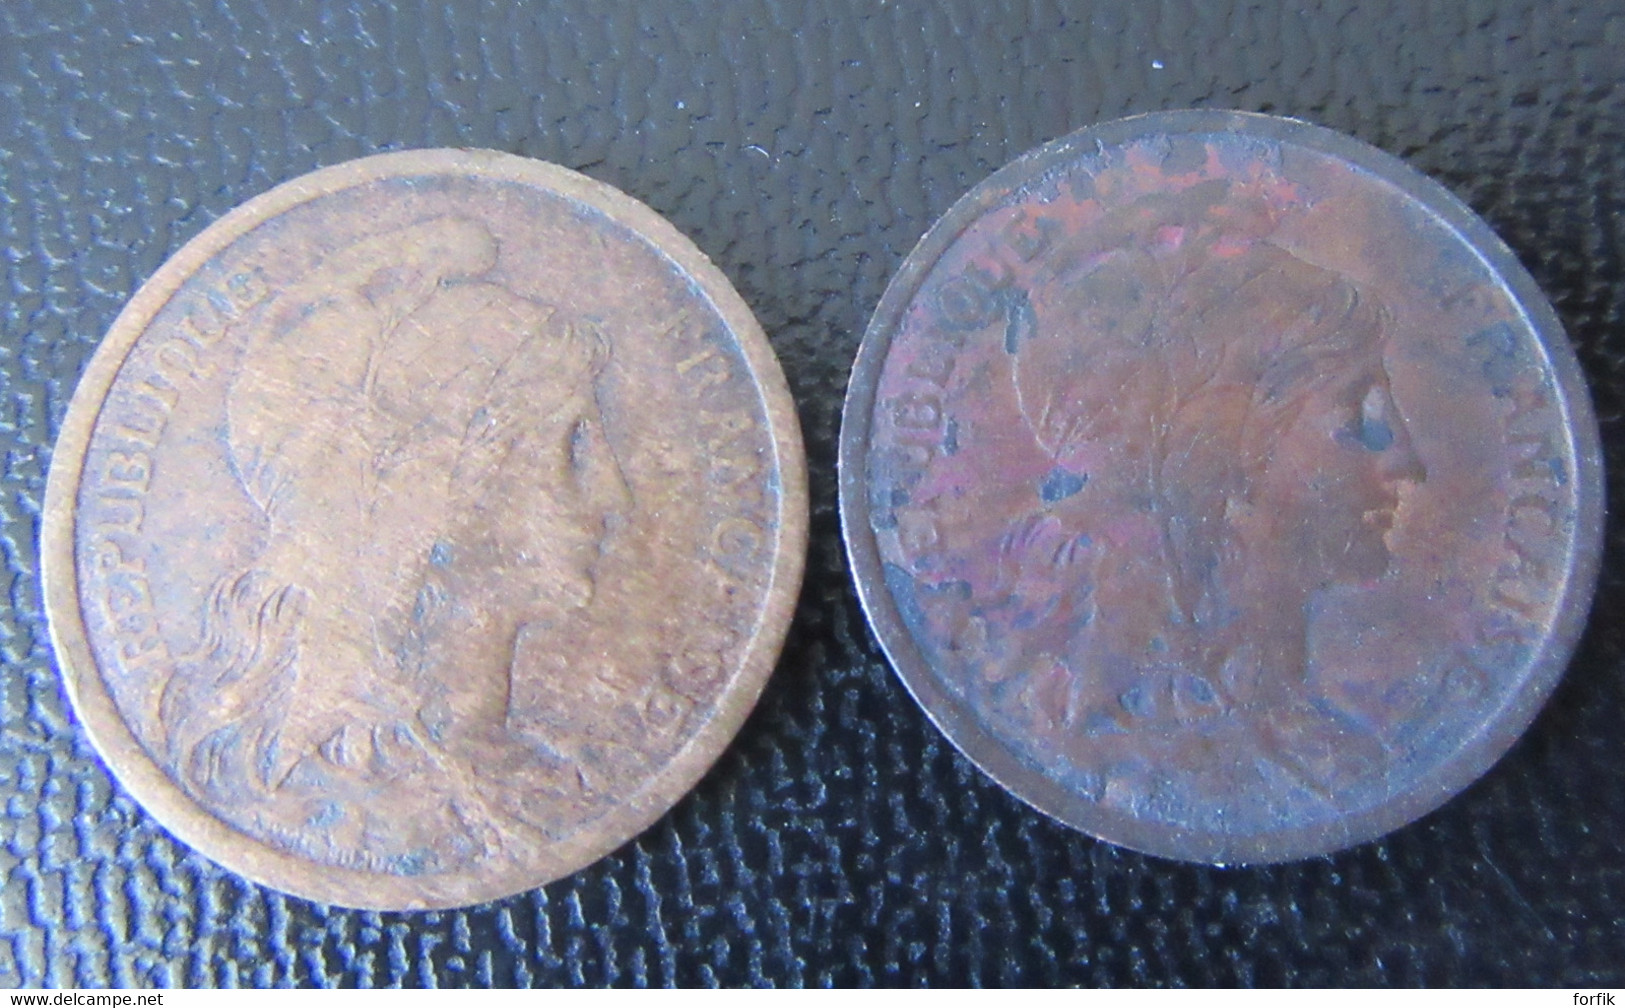 France - 22 Monnaies 1862 à 1946 avec 5 en argent dont 20 centimes Napoléon III 1867 A, 1 Franc Semeuse 1916, etc...